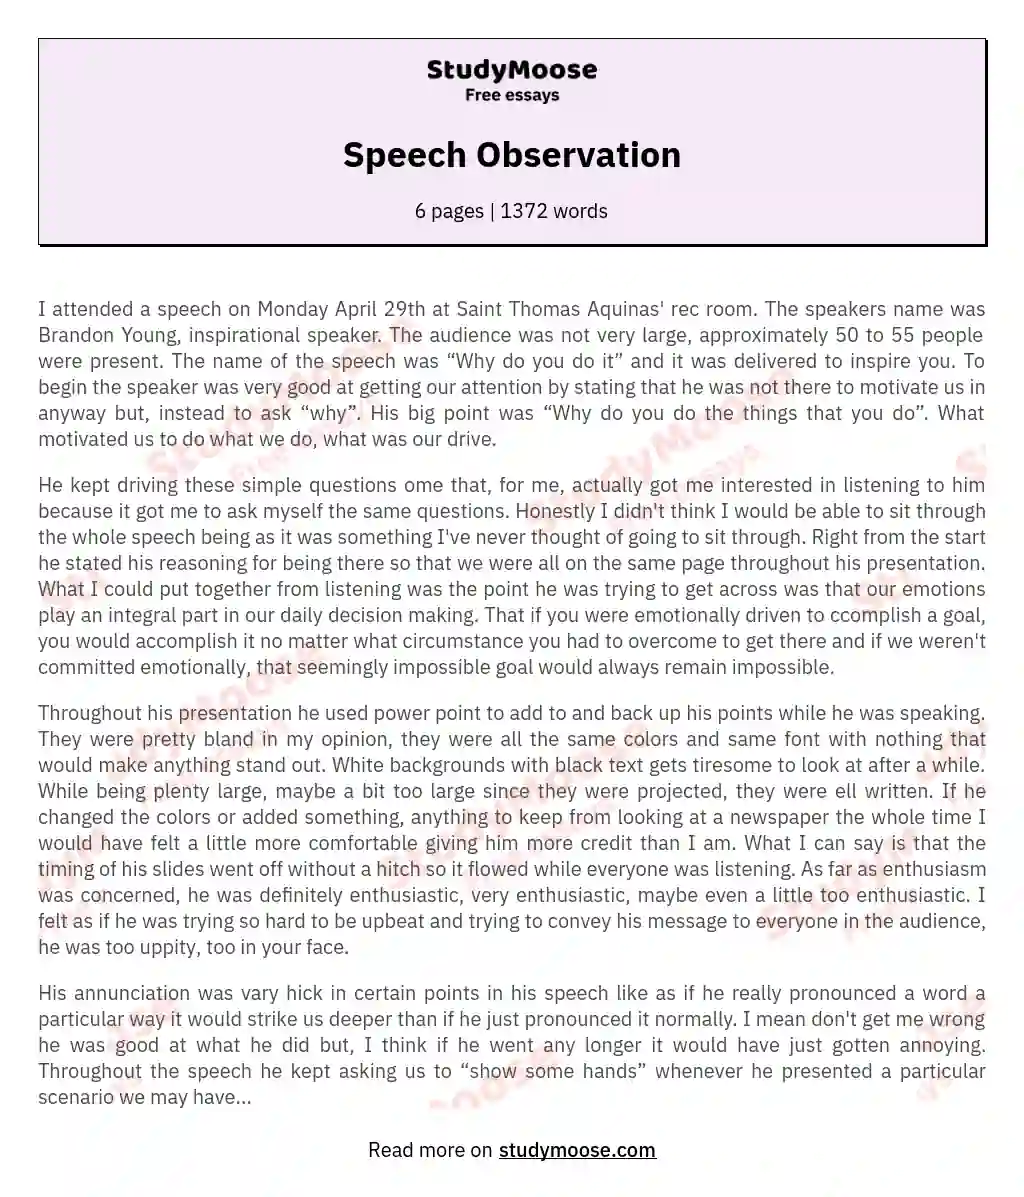 Speech Observation essay